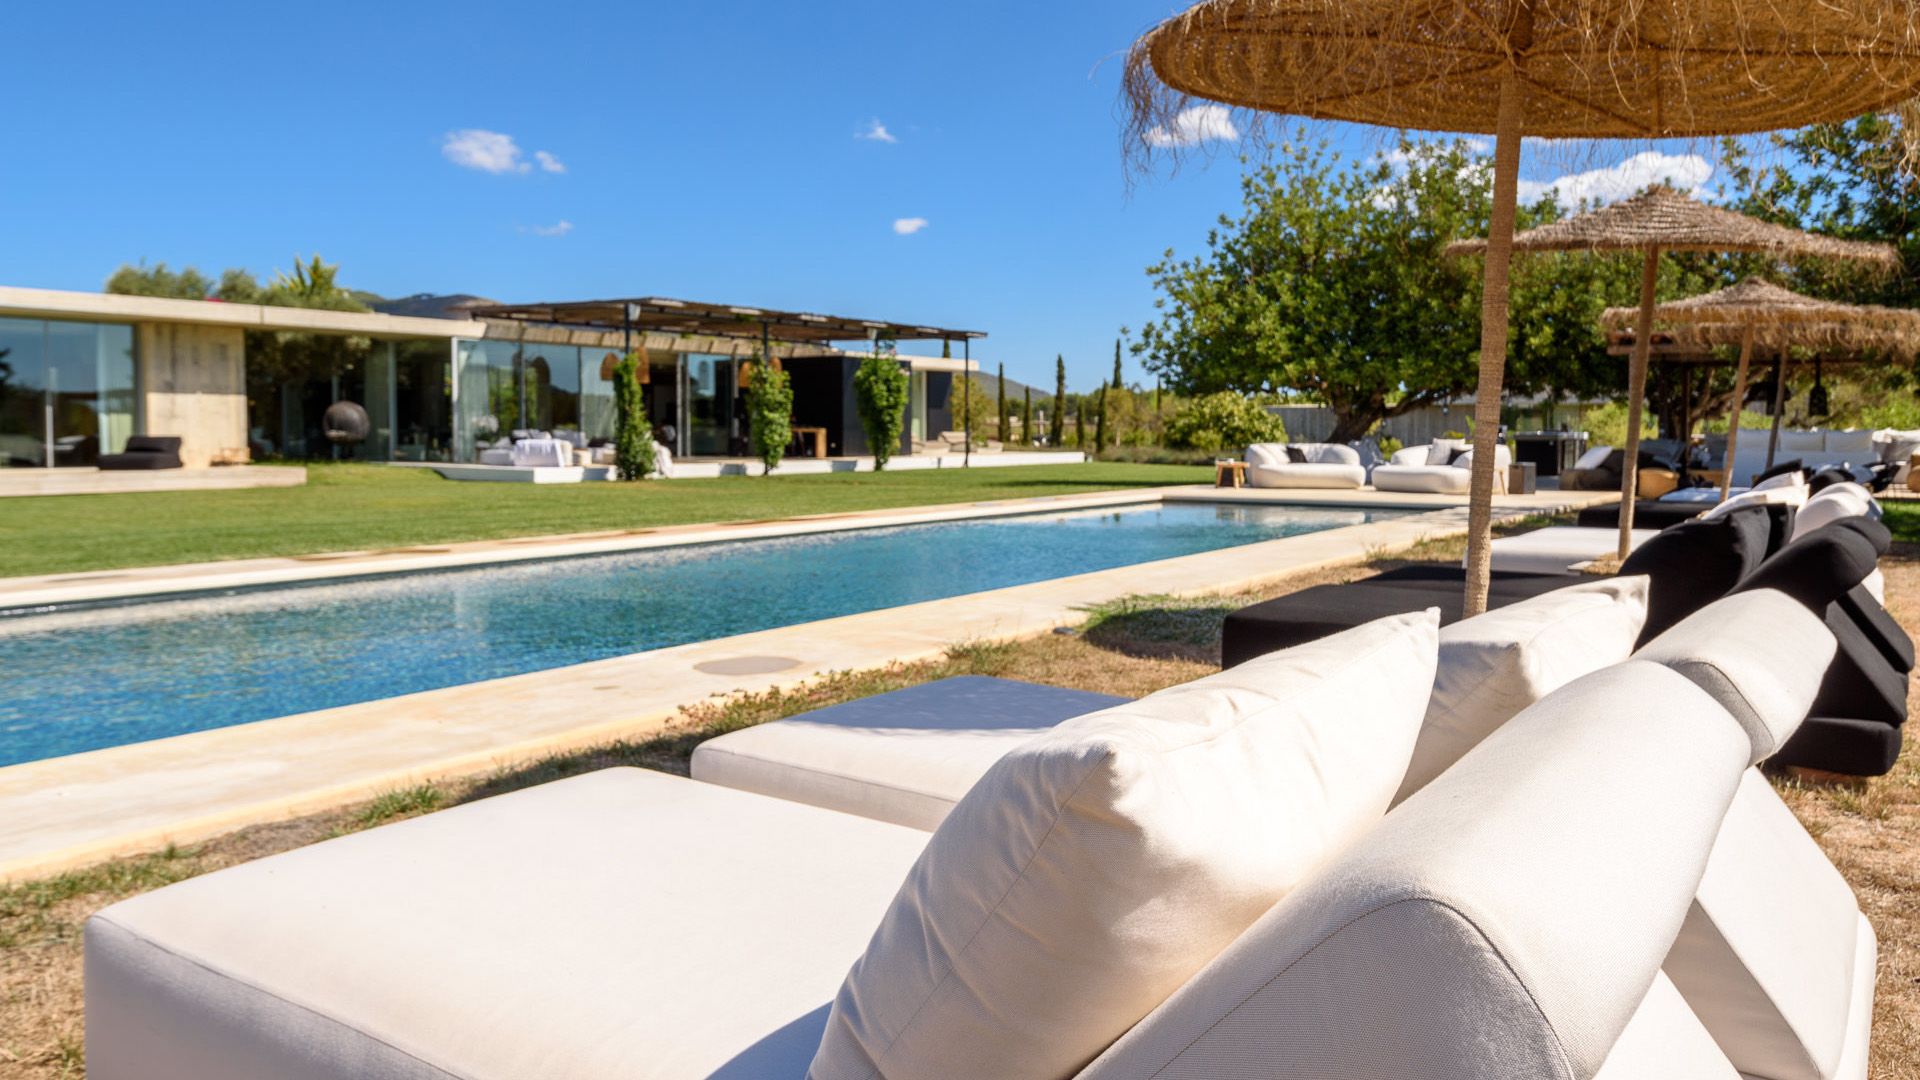 Villa Los Amigos, San Lorenzo, 5 bedrooms, Ibiza, Luxury Villa, Holiday Villa, 5 bedroom luxury villa close to Ibiza town